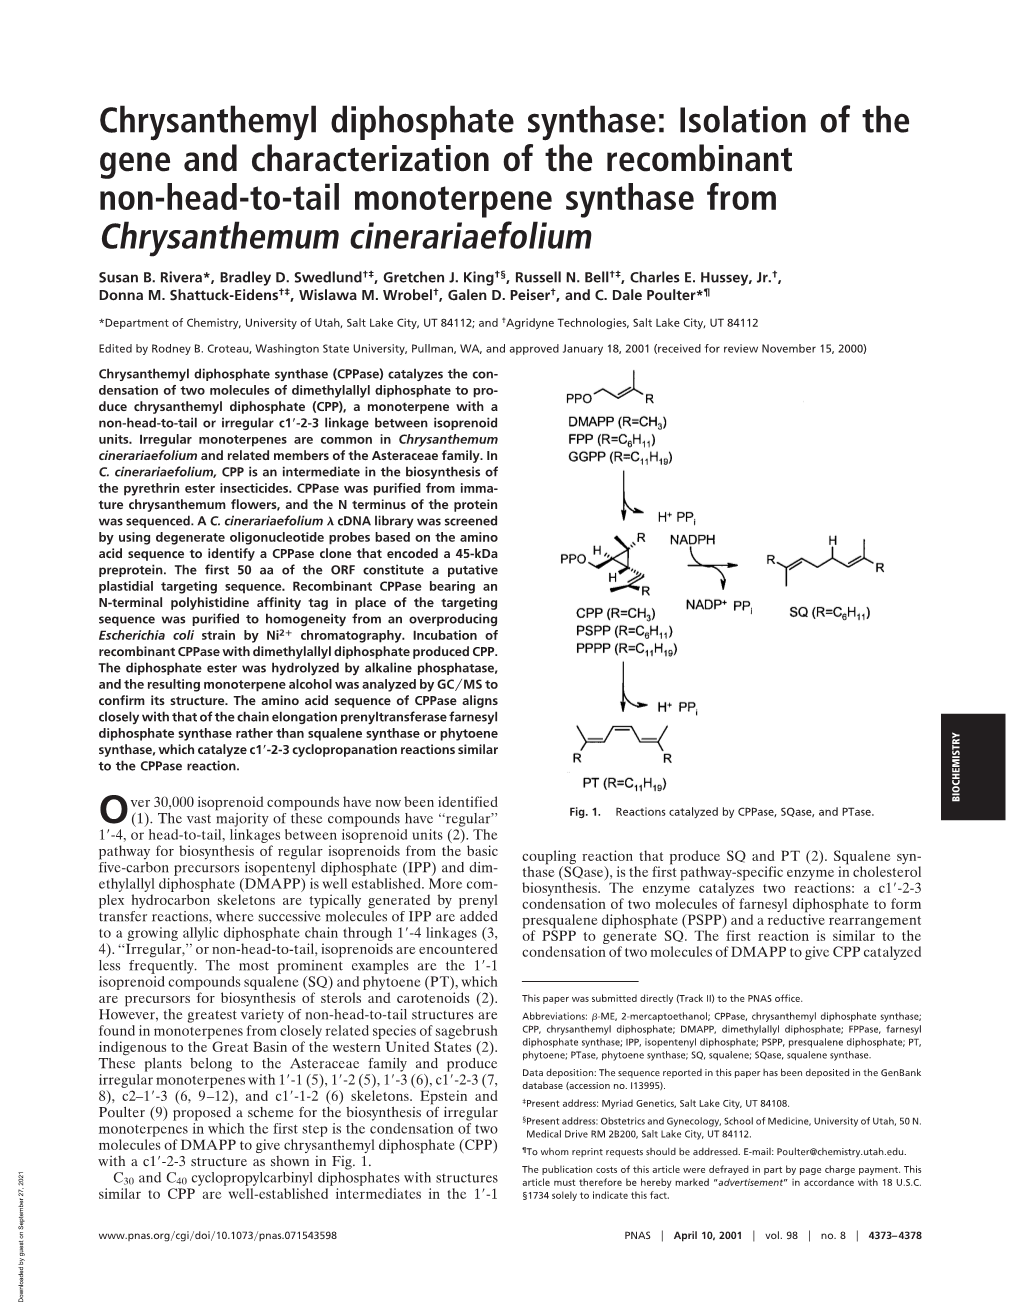 Chrysanthemyl Diphosphate Synthase